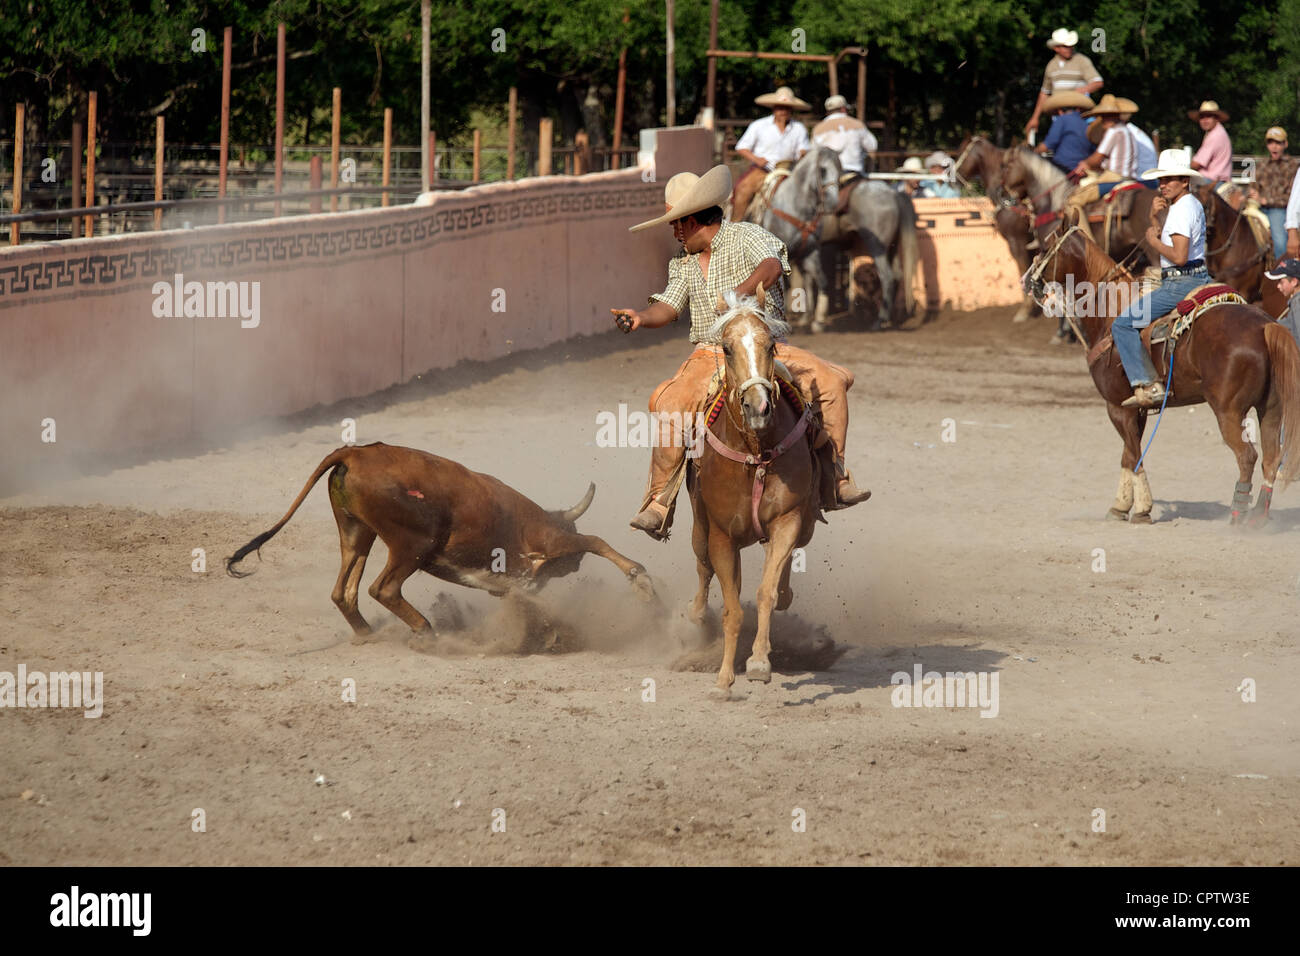 Cavalier charros mexicains se débat un boeuf à la terre dans un coleadero ou toreo de colas, San Antonio, TX, US Banque D'Images